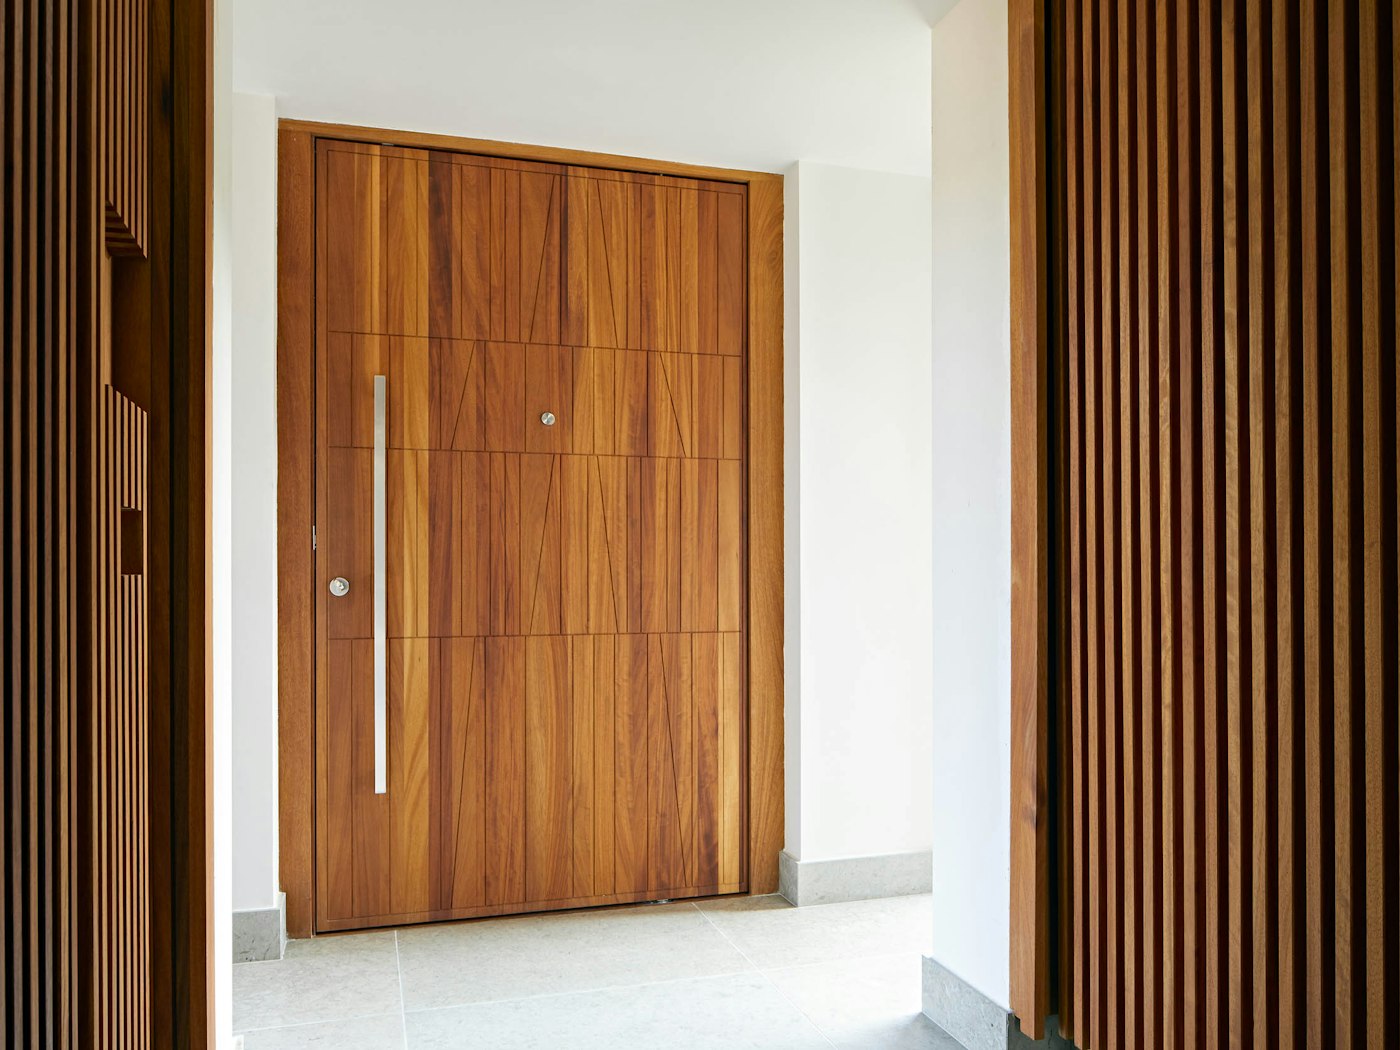 Stainless steel front door handle on iroko door